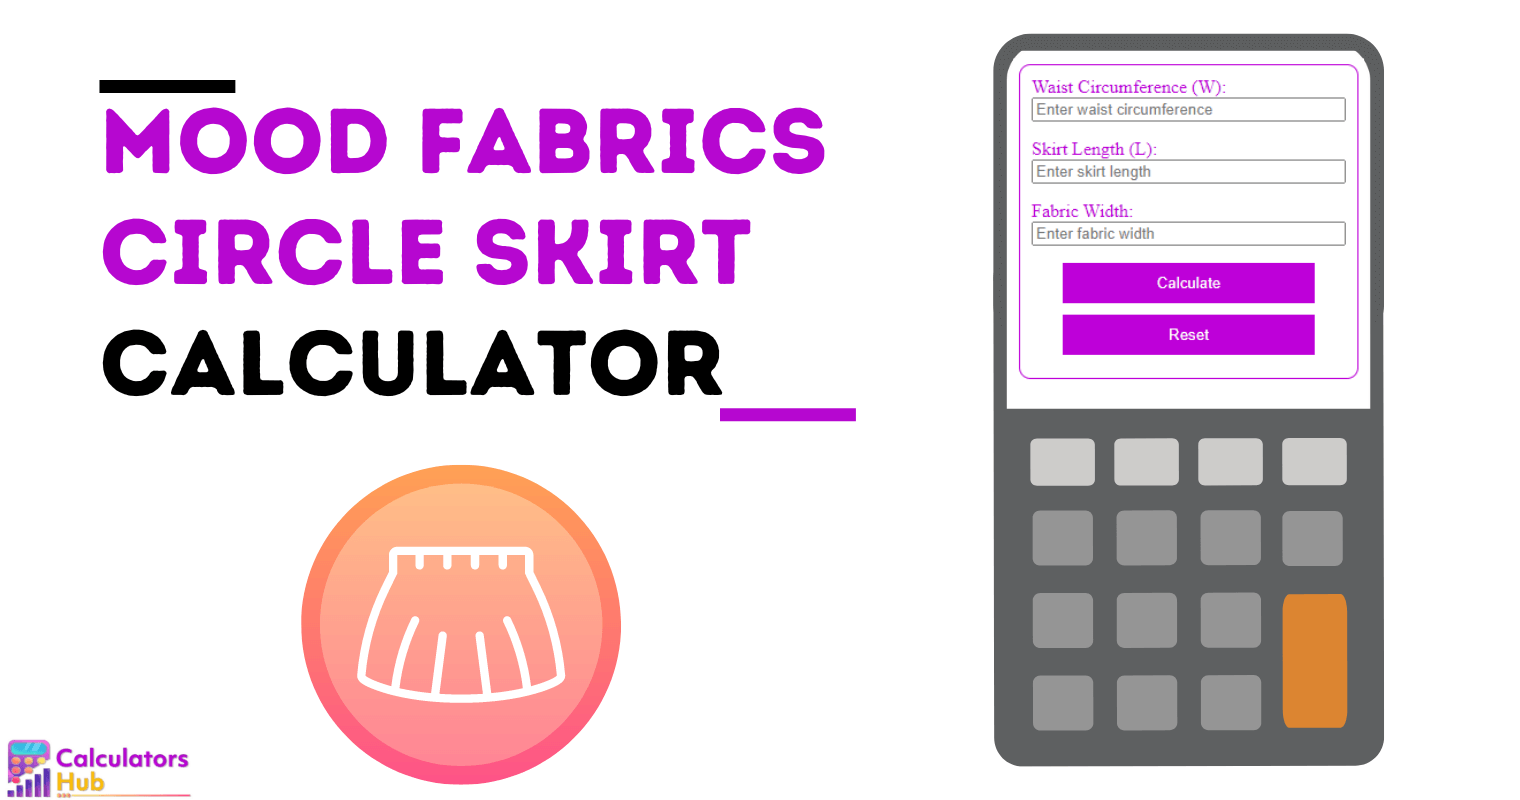 Calculateur de jupe circulaire Mood Fabrics